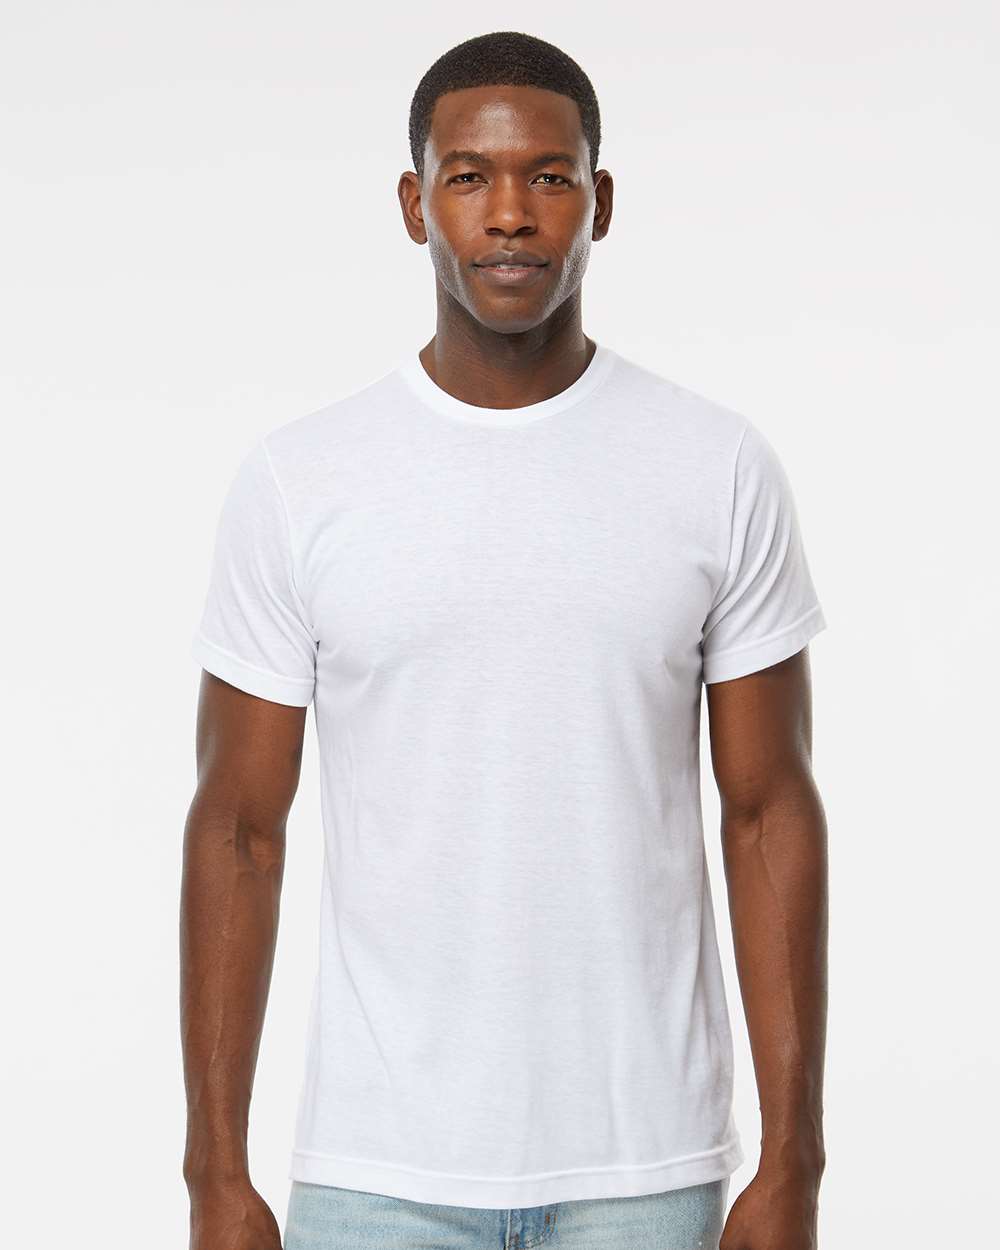 M&O Women’s Deluxe Blend T-Shirt #3540 White